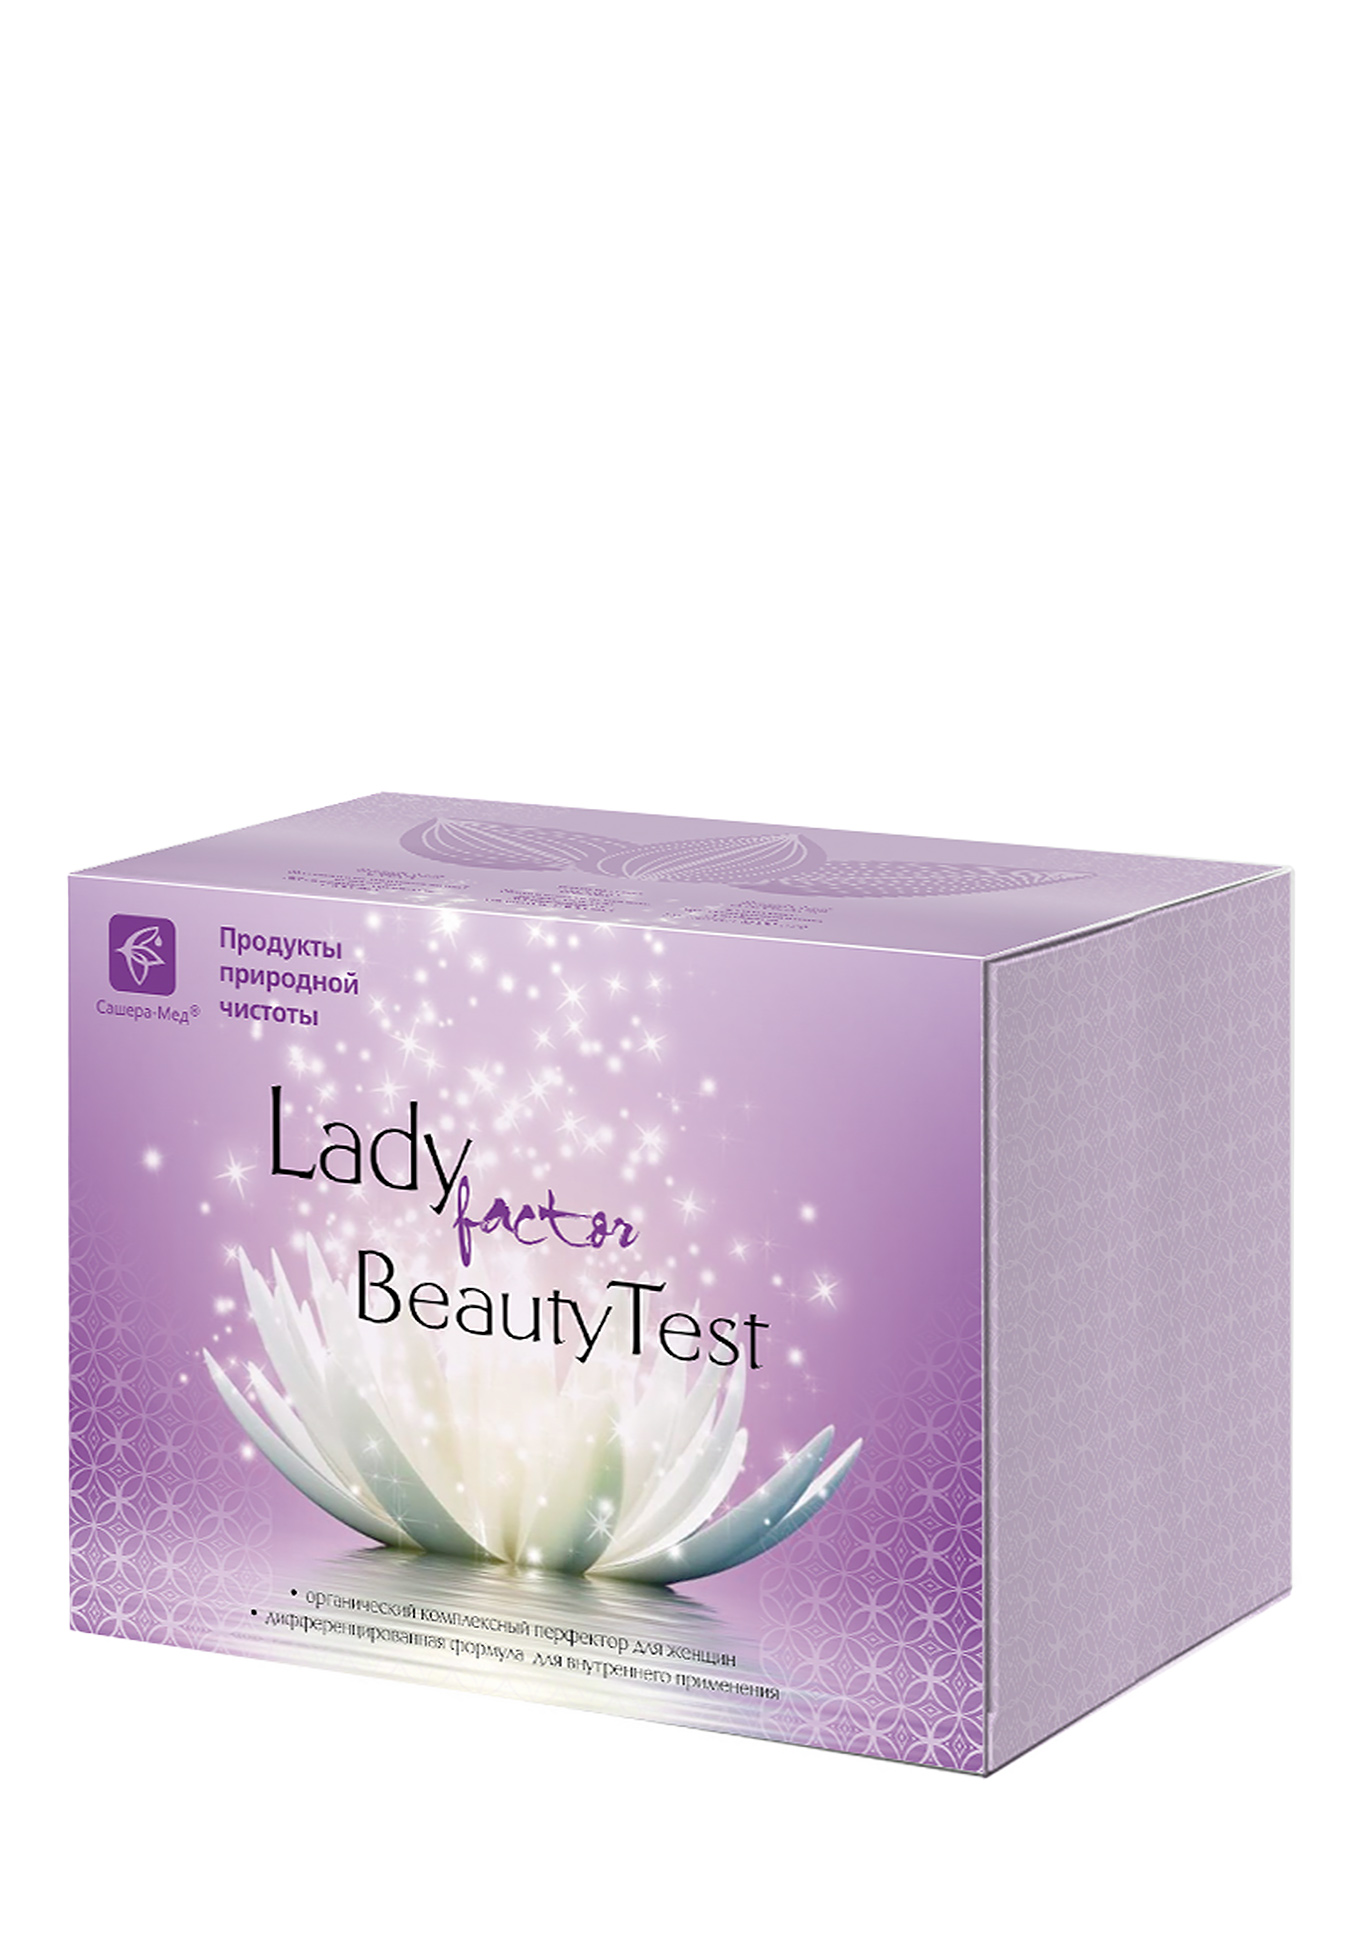 Комплекс LadyFactor BeautyTest Сашера-Мед - фото 3